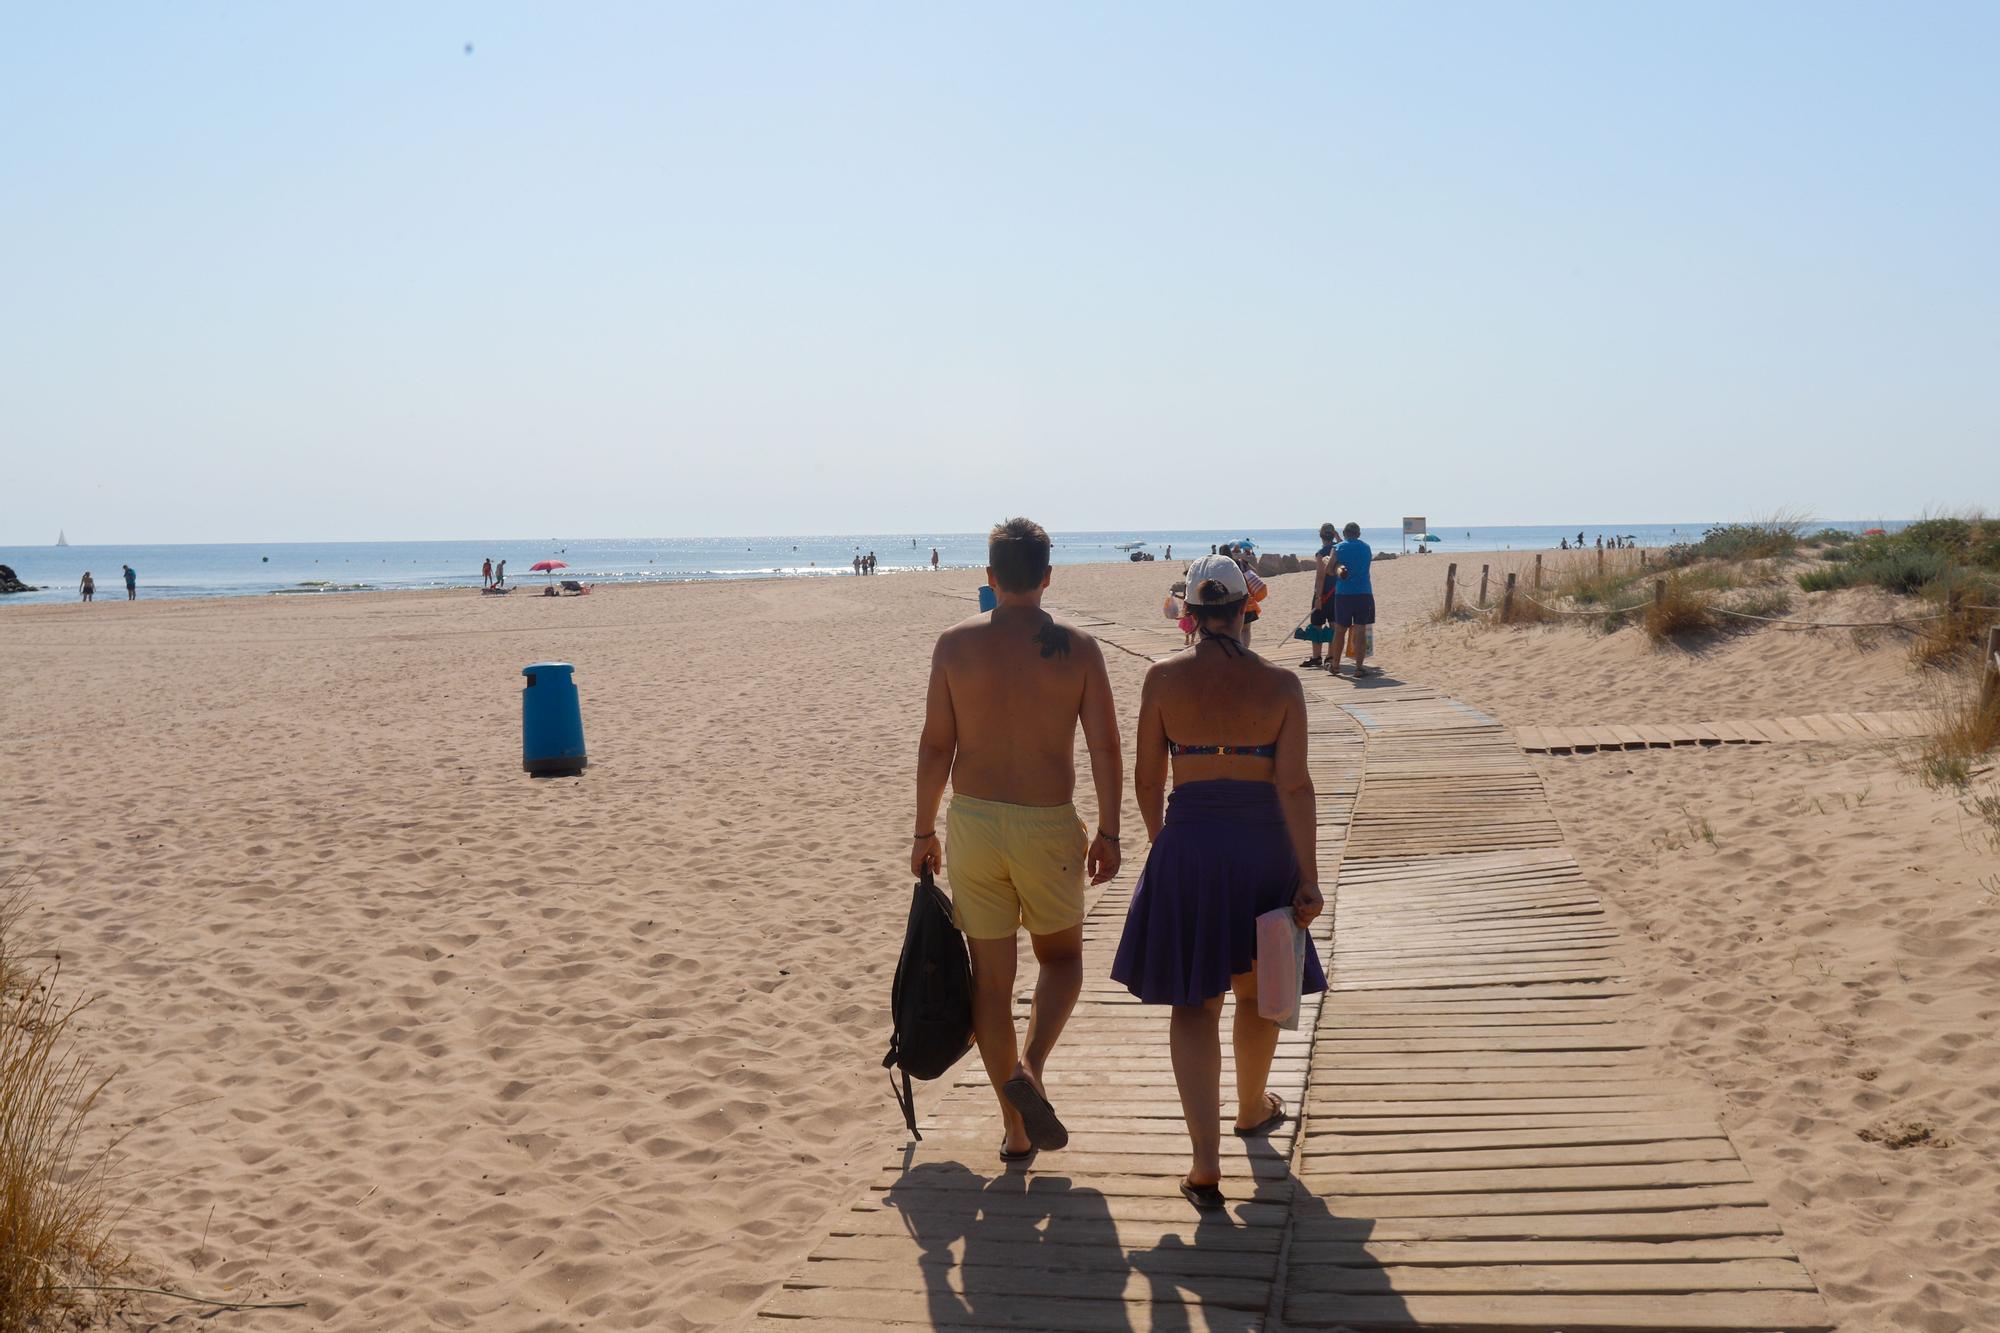 Las playas valencianas se enfrentan a graves problemas de regresión